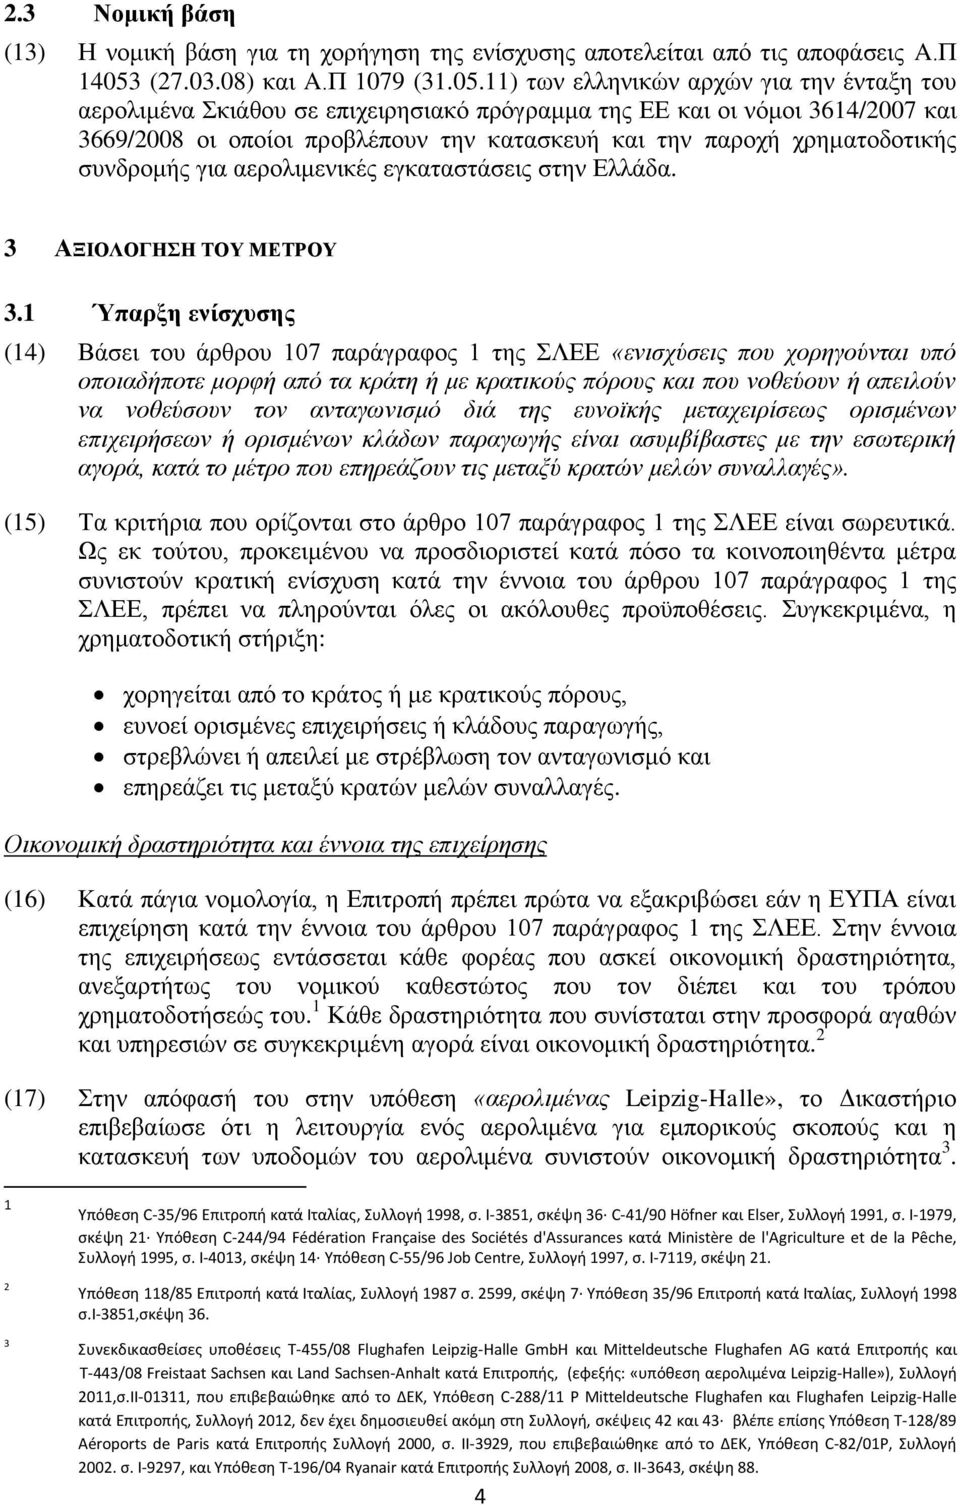 11) των ελληνικών αρχών για την ένταξη του αερολιμένα Σκιάθου σε επιχειρησιακό πρόγραμμα της ΕΕ και οι νόμοι 3614/2007 και 3669/2008 οι οποίοι προβλέπουν την κατασκευή και την παροχή χρηματοδοτικής